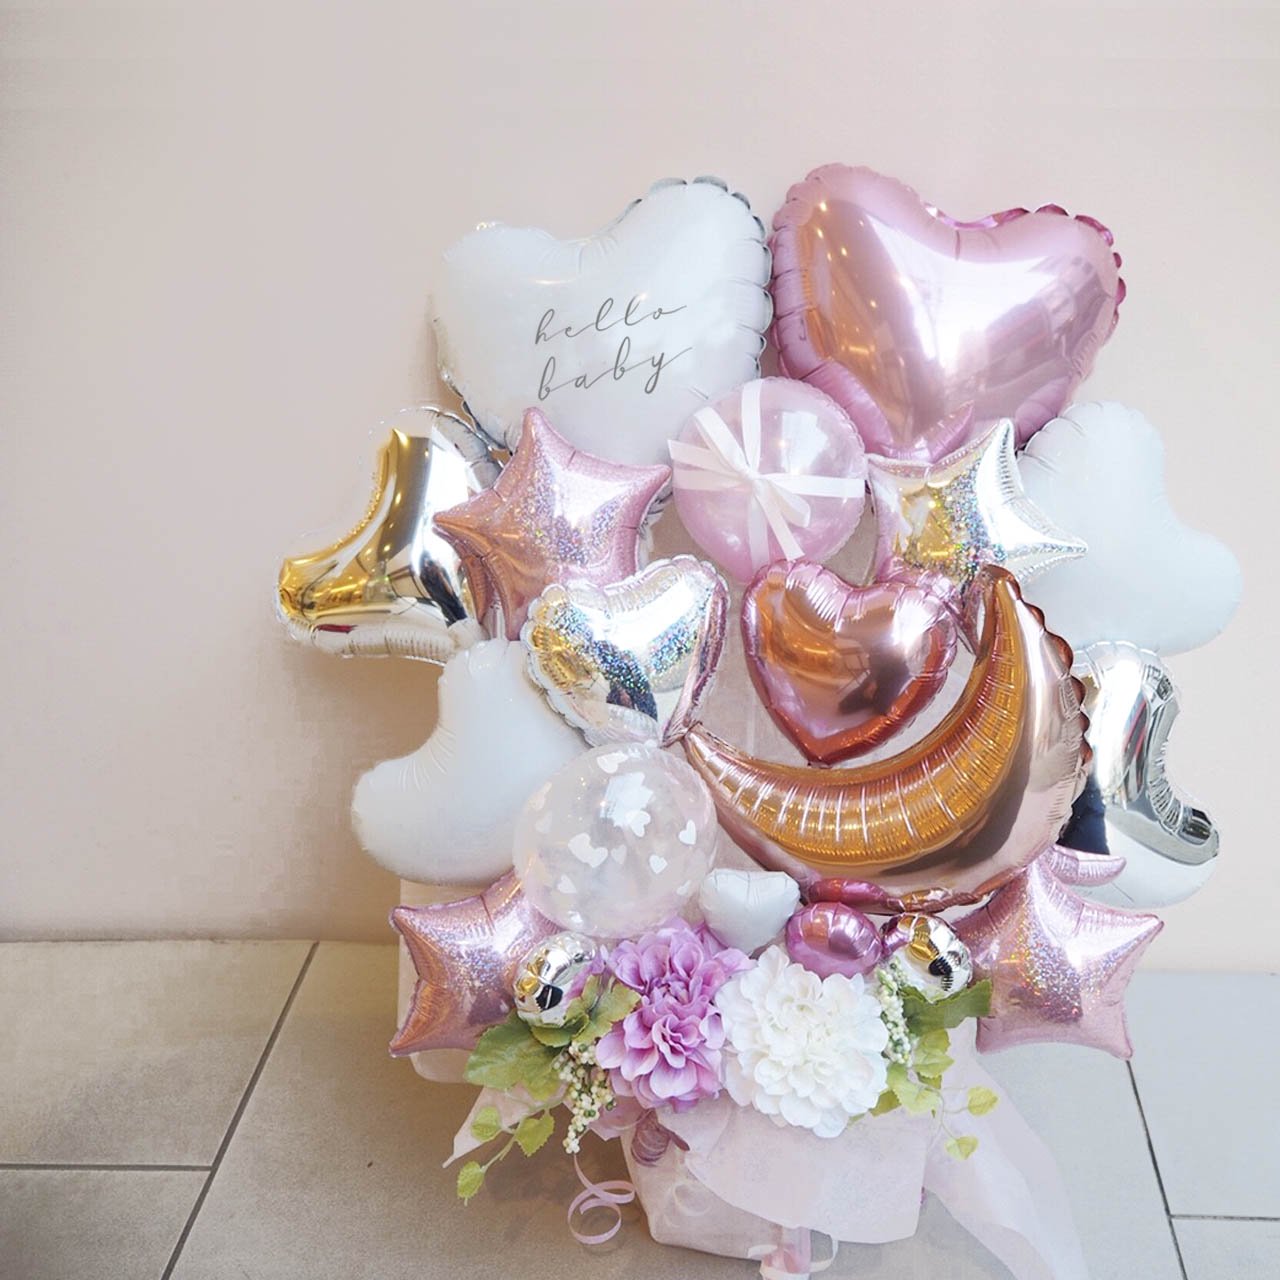 Anela Pink Balloon Gift - Table top type - アネラピンクバルーンギフト - チャビーバルーン 大阪 名古屋  滋賀にあるおしゃれなバルーン電報 バルーン装飾 バルーンギフトのことならチャビーバルーン